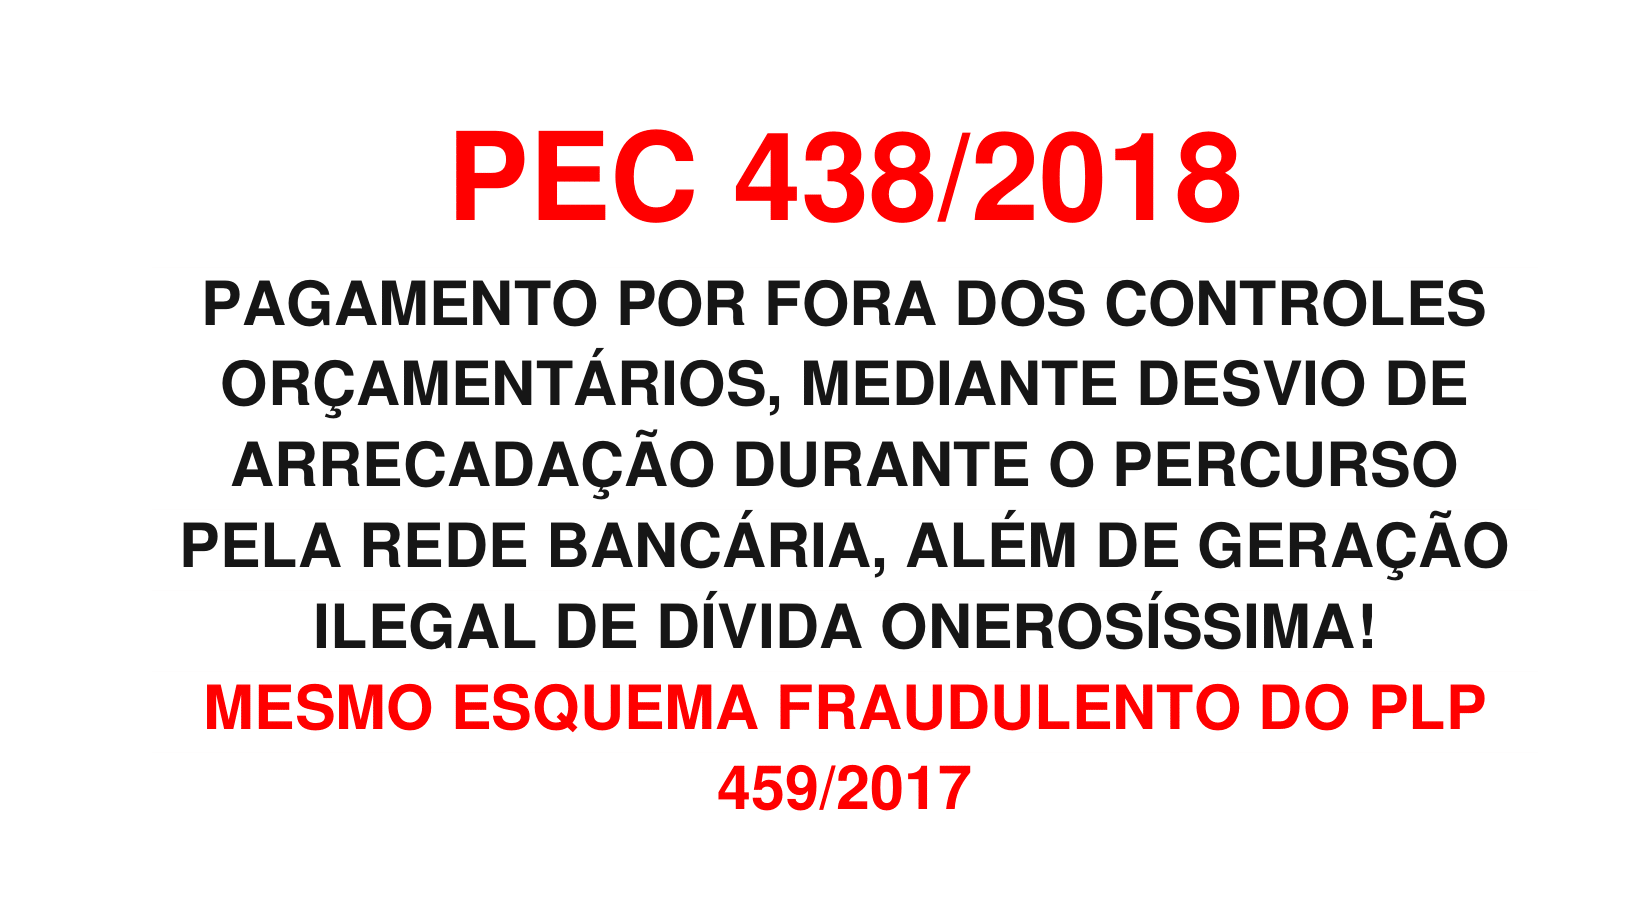 PEC 438/2018 – MESMO ESQUEMA FRAUDULENTO DO PLP 459/2017!